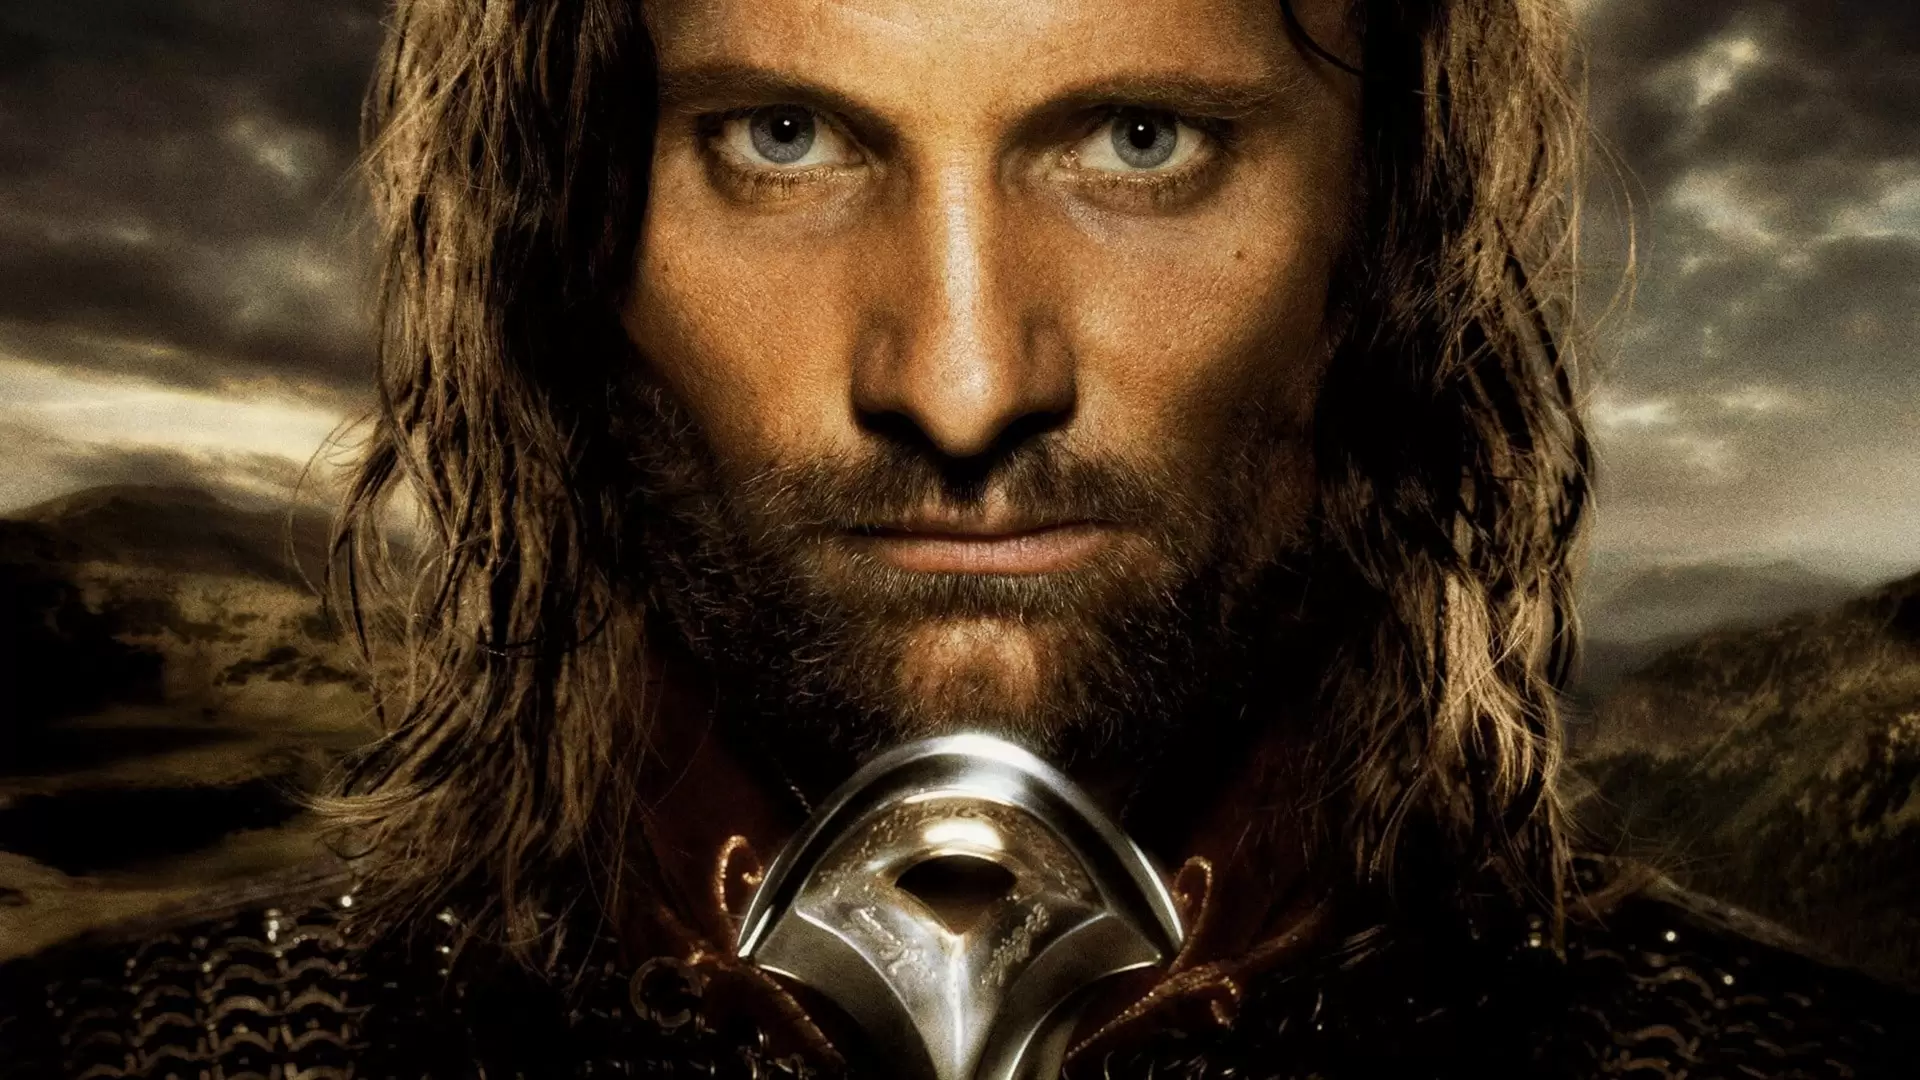 دانلود فیلم The Lord of the Rings: The Return of the King 2003 (ارباب حلقه ها ۳: بازگشت شاه) با زیرنویس فارسی و تماشای آنلاین